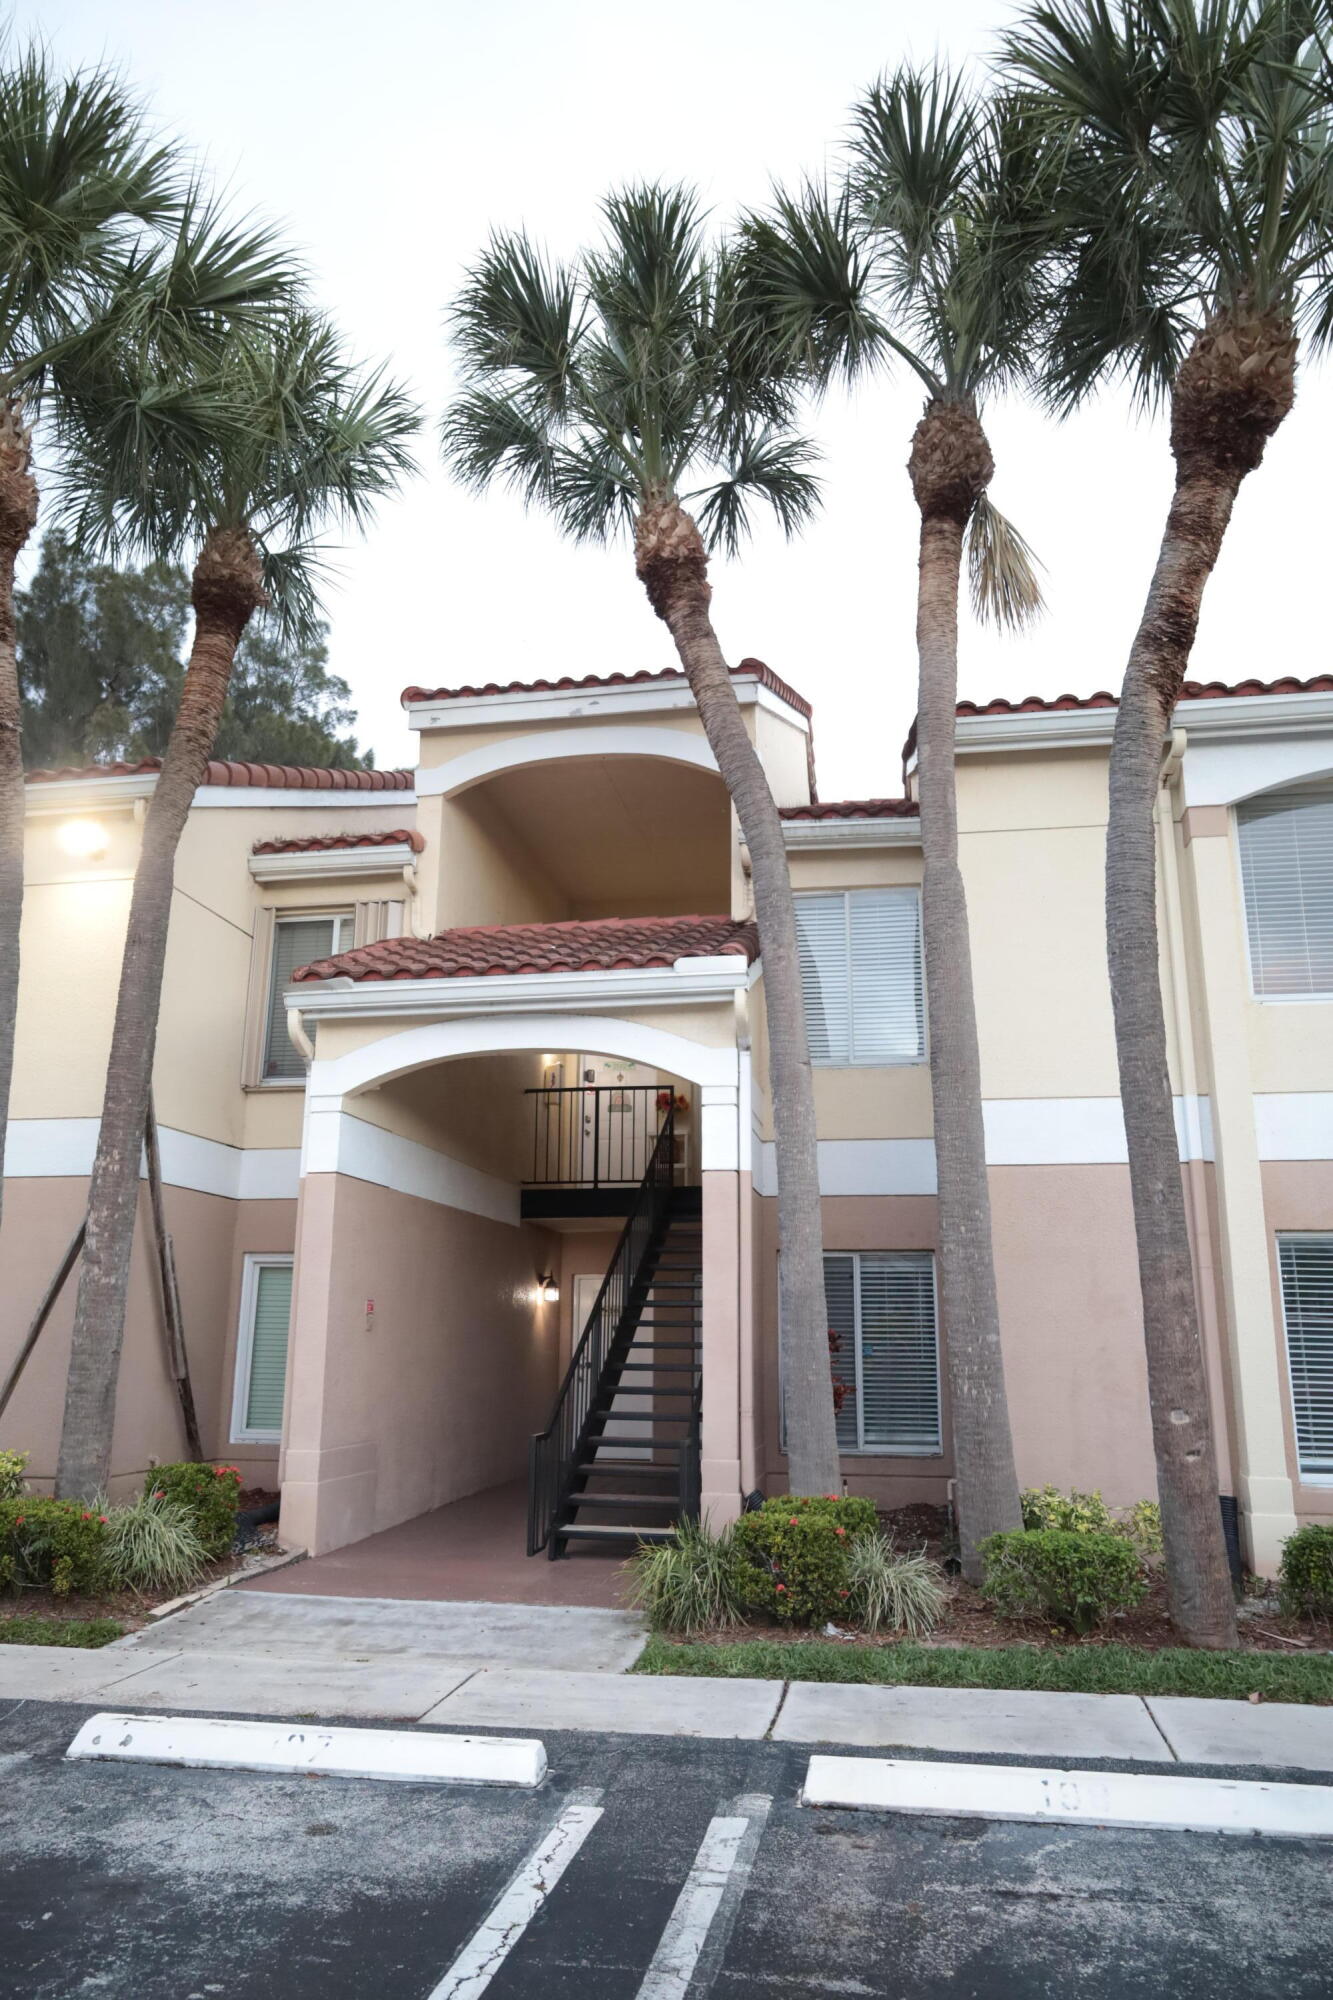 Property for Sale at 815 W Boynton Beach Boulevard 16-103, Boynton Beach, Palm Beach County, Florida - Bedrooms: 2 
Bathrooms: 2  - $265,000